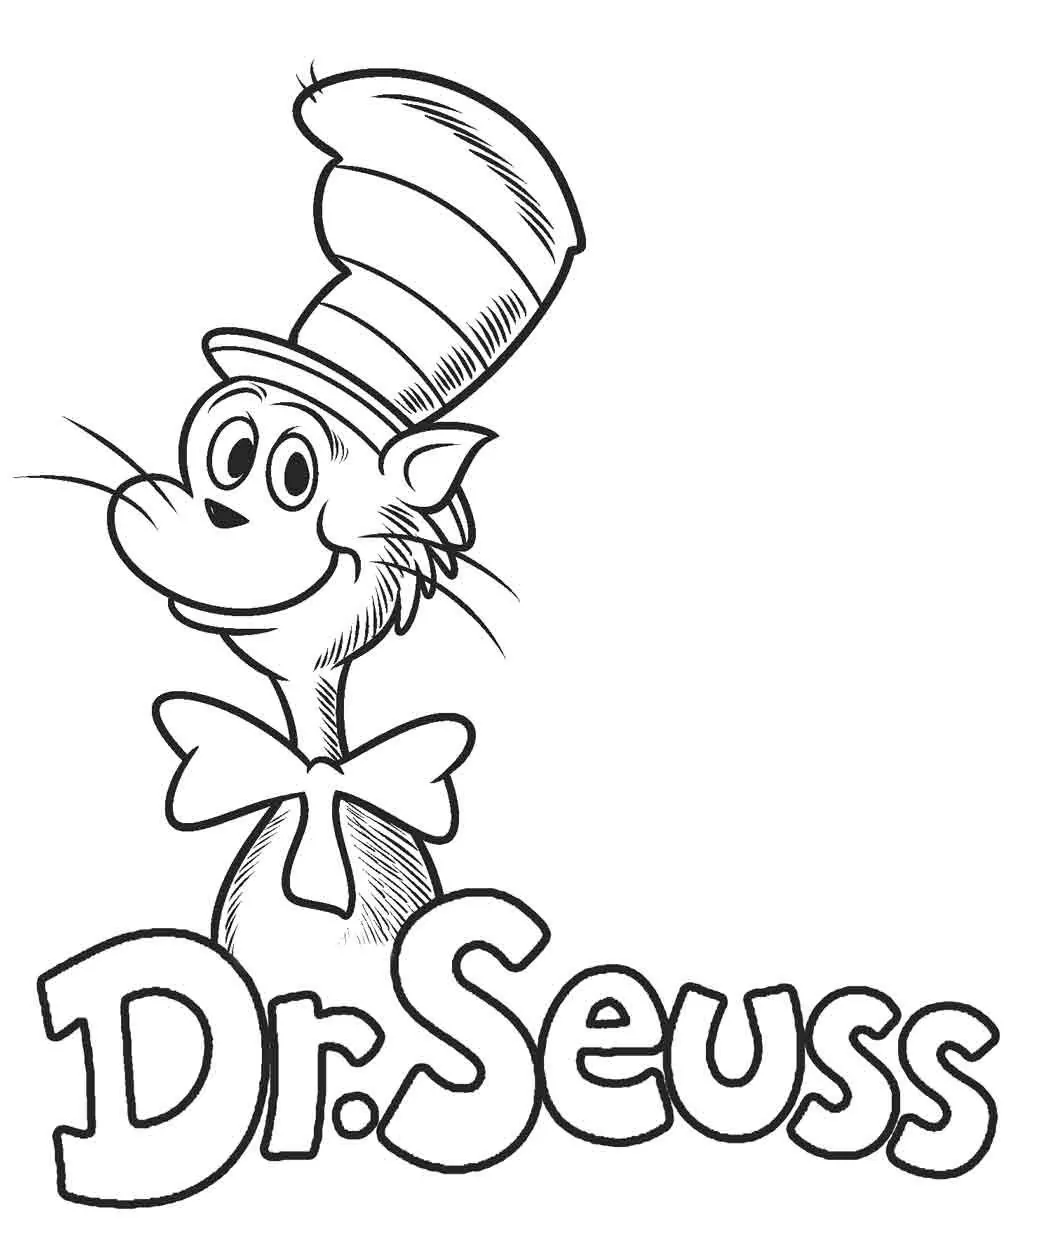 Dr. Seuss' Charakter